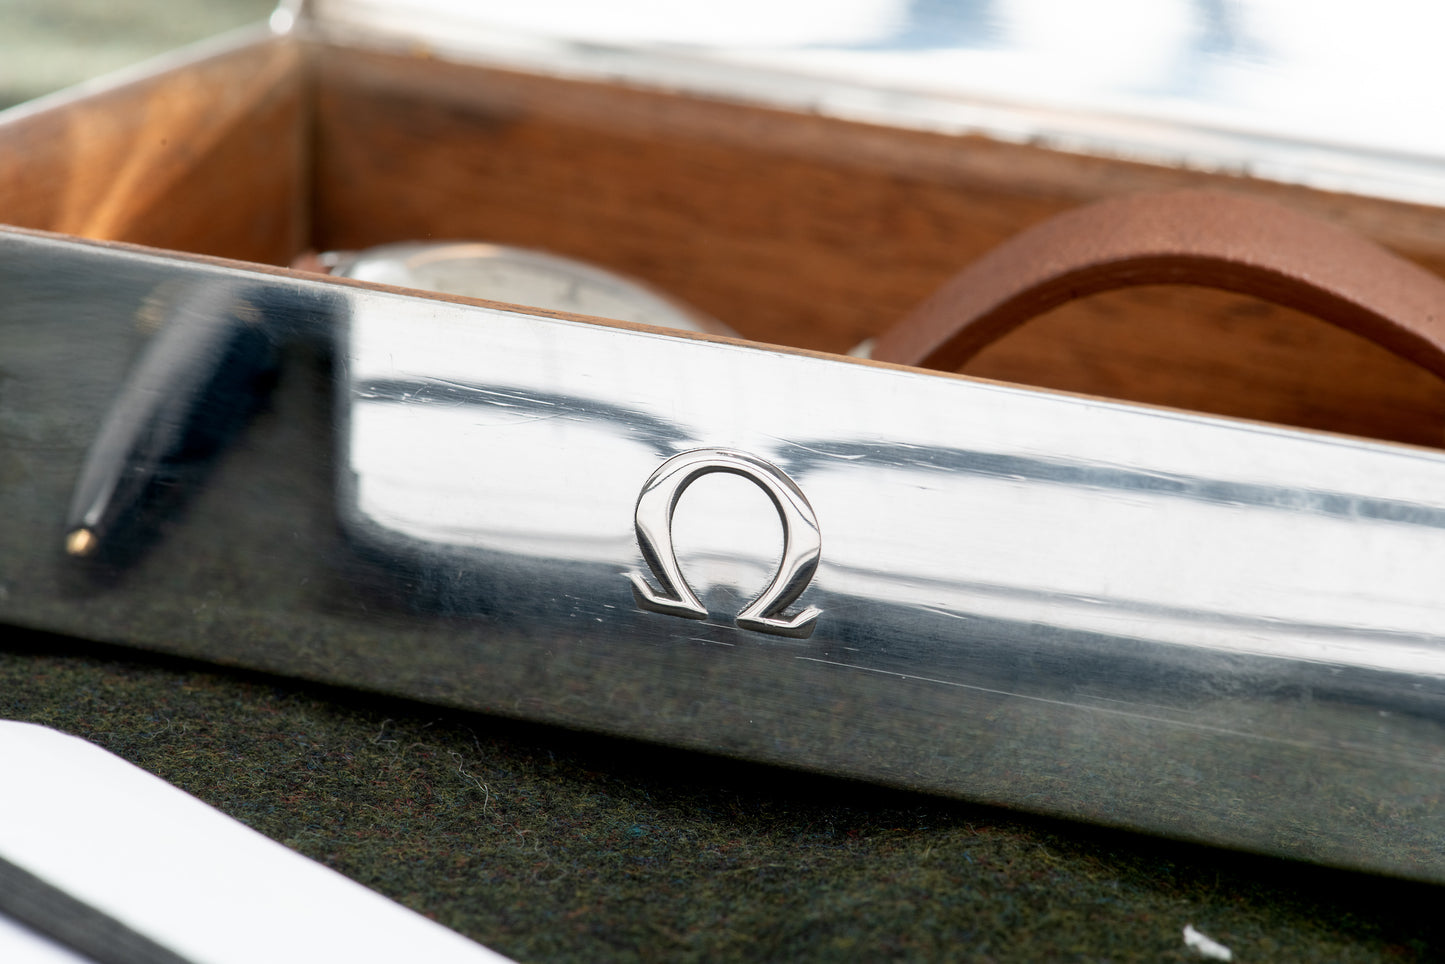 Omega Sterling Silver Presentation Box - Rectangular Polished Lid